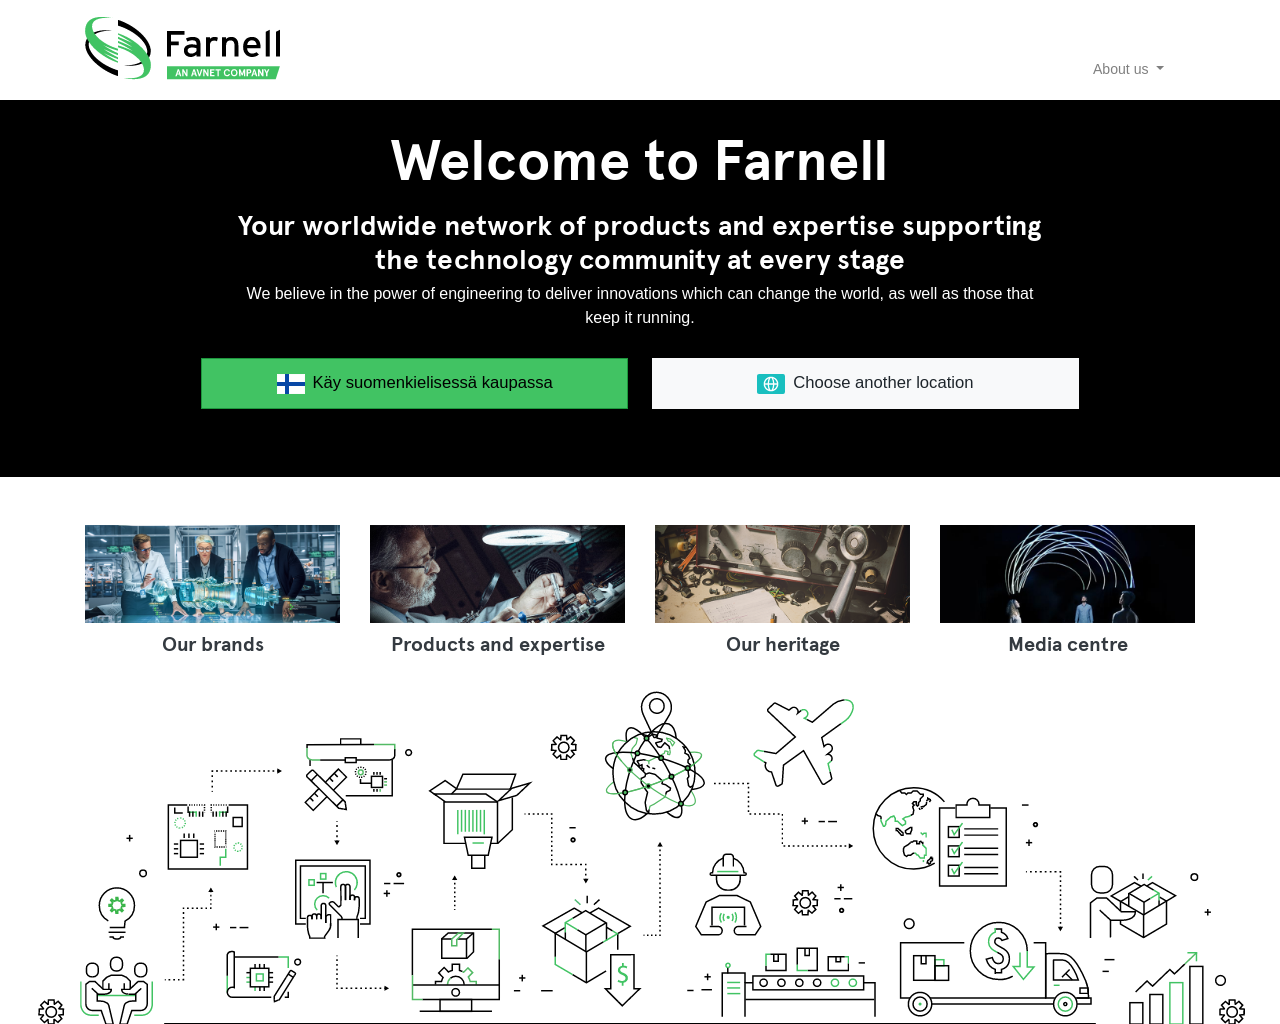 www.farnell.com